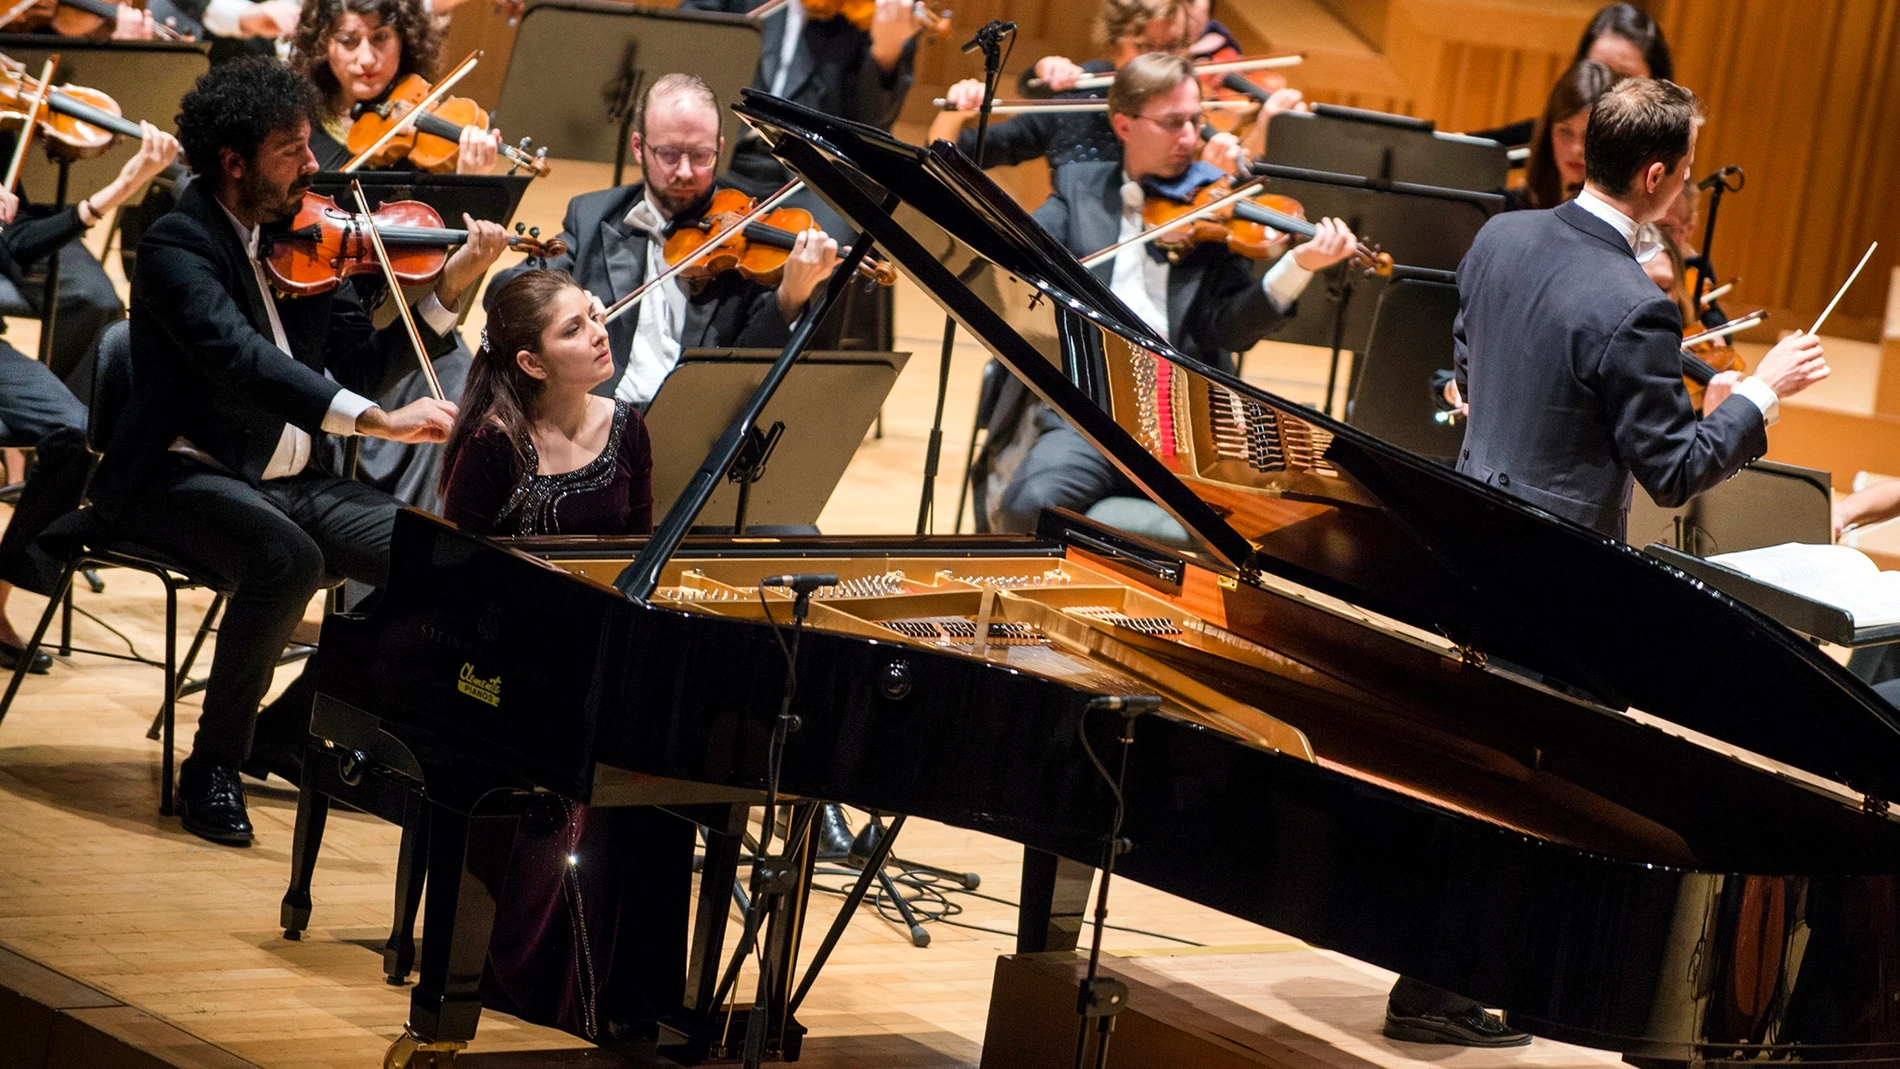 Cultura.- El XXI Premio Iturbi aumenta un 70% la dotación económica a los pianistas ganadores